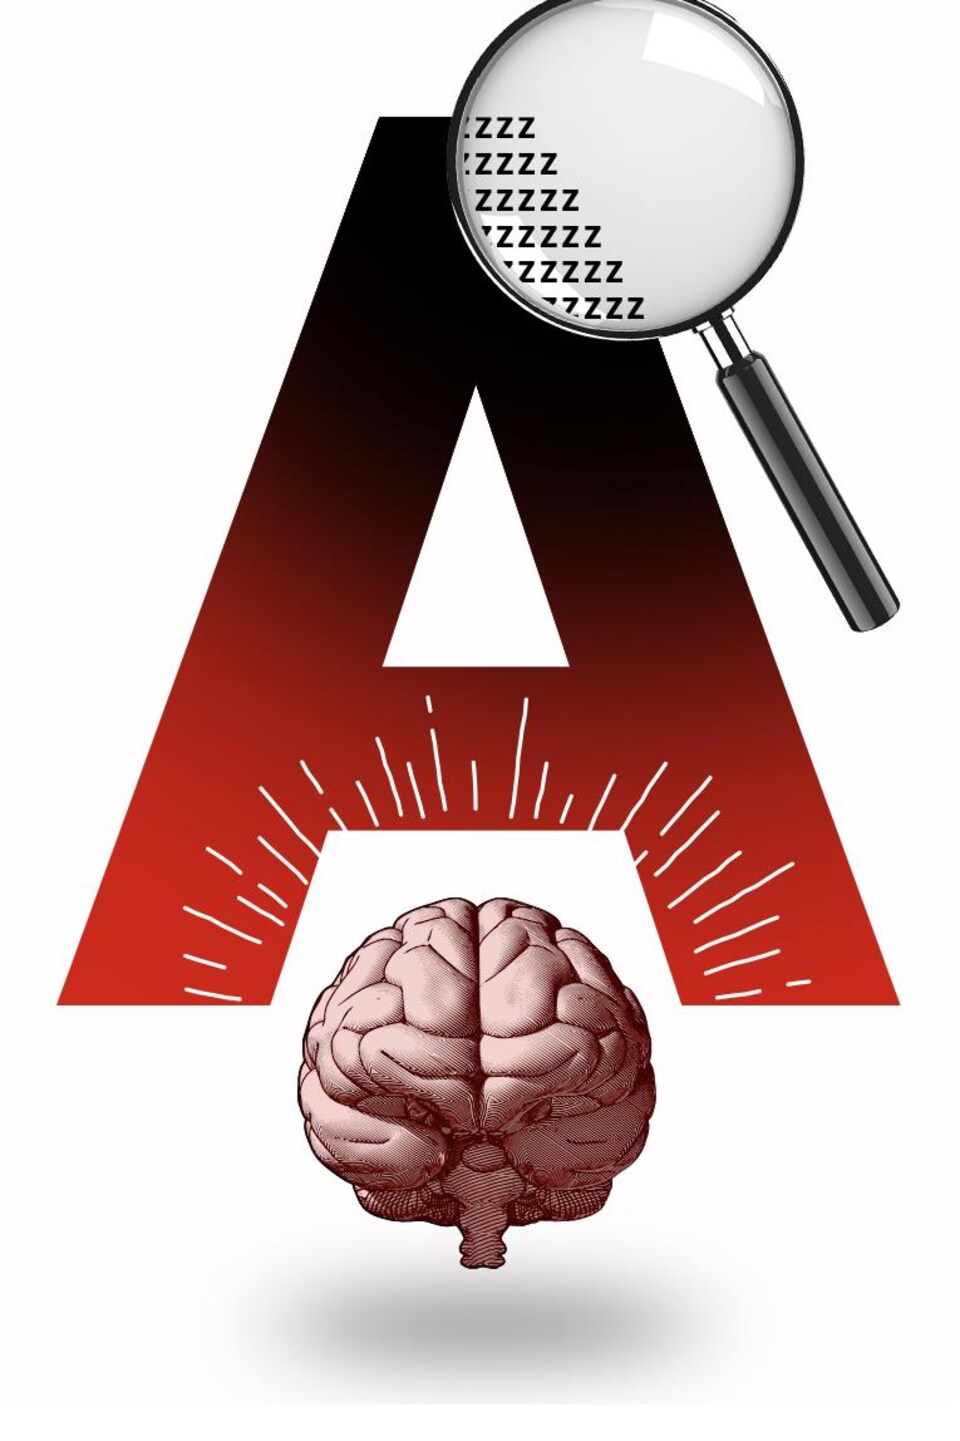 Un cerveau qui observe avec un loupe une immense lettre A majuscule constituée de minuscules lettres Z.